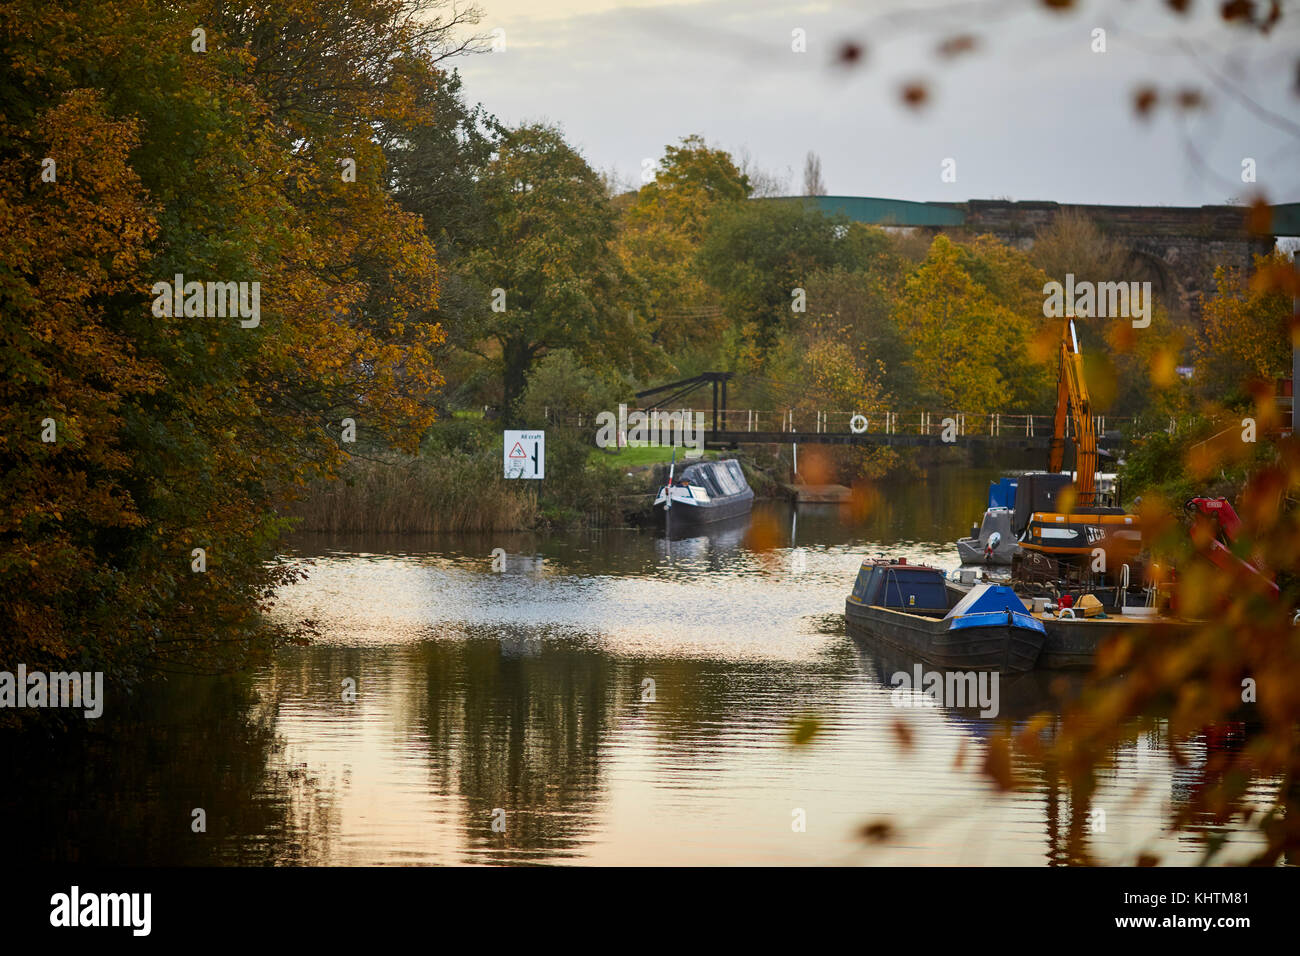 Canal embarcaciones flotando en el río Weaver con golden otoño los árboles en el paisaje, Northwich en Cheshire Foto de stock